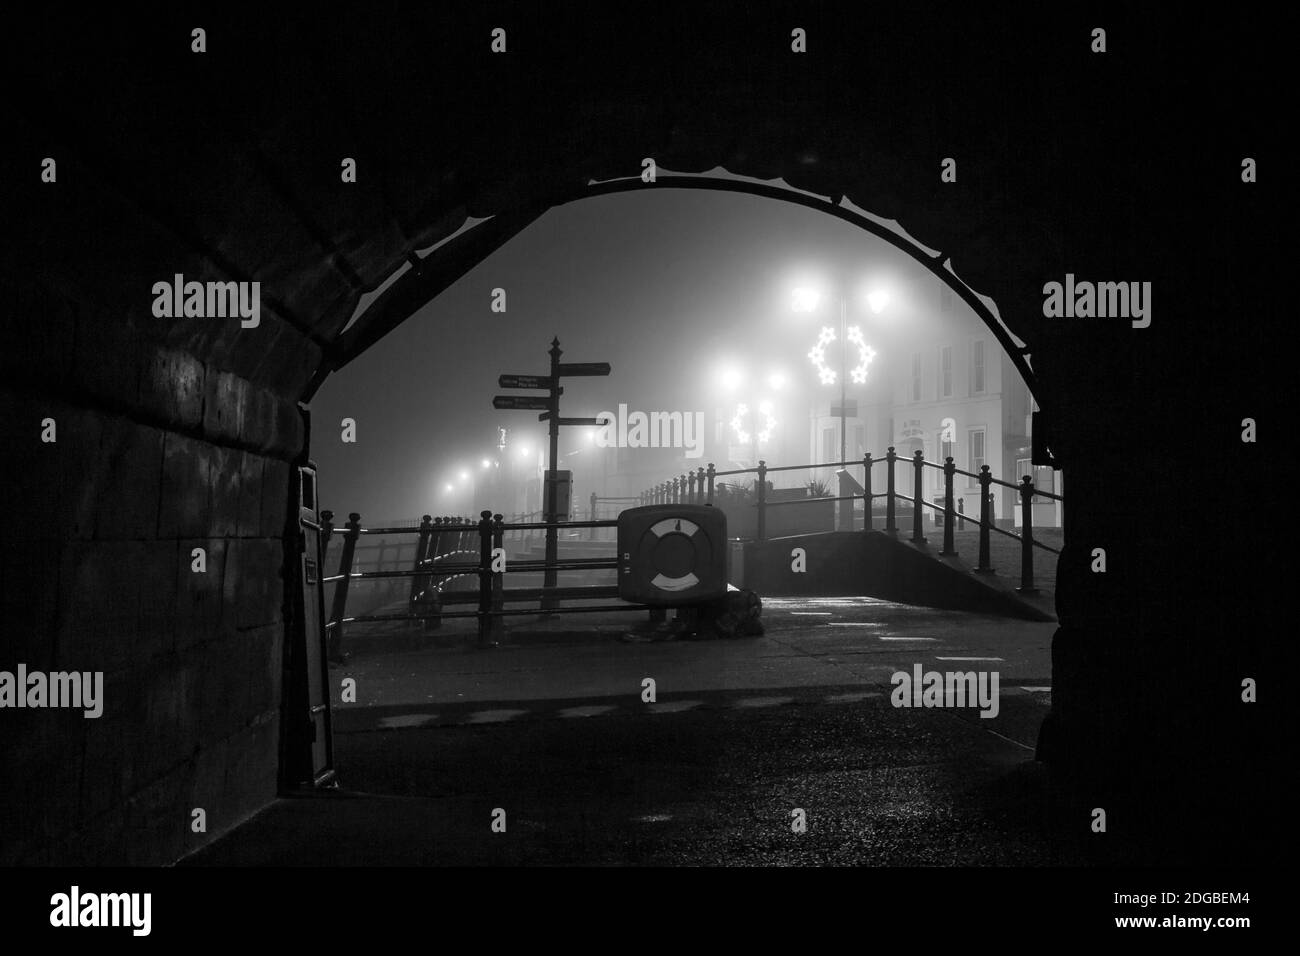 Monochrome, alte britische Straßenszene bei Nacht mit Straßenbeleuchtung, die durch einen Brückentunnel betrachtet wird. Stockfoto